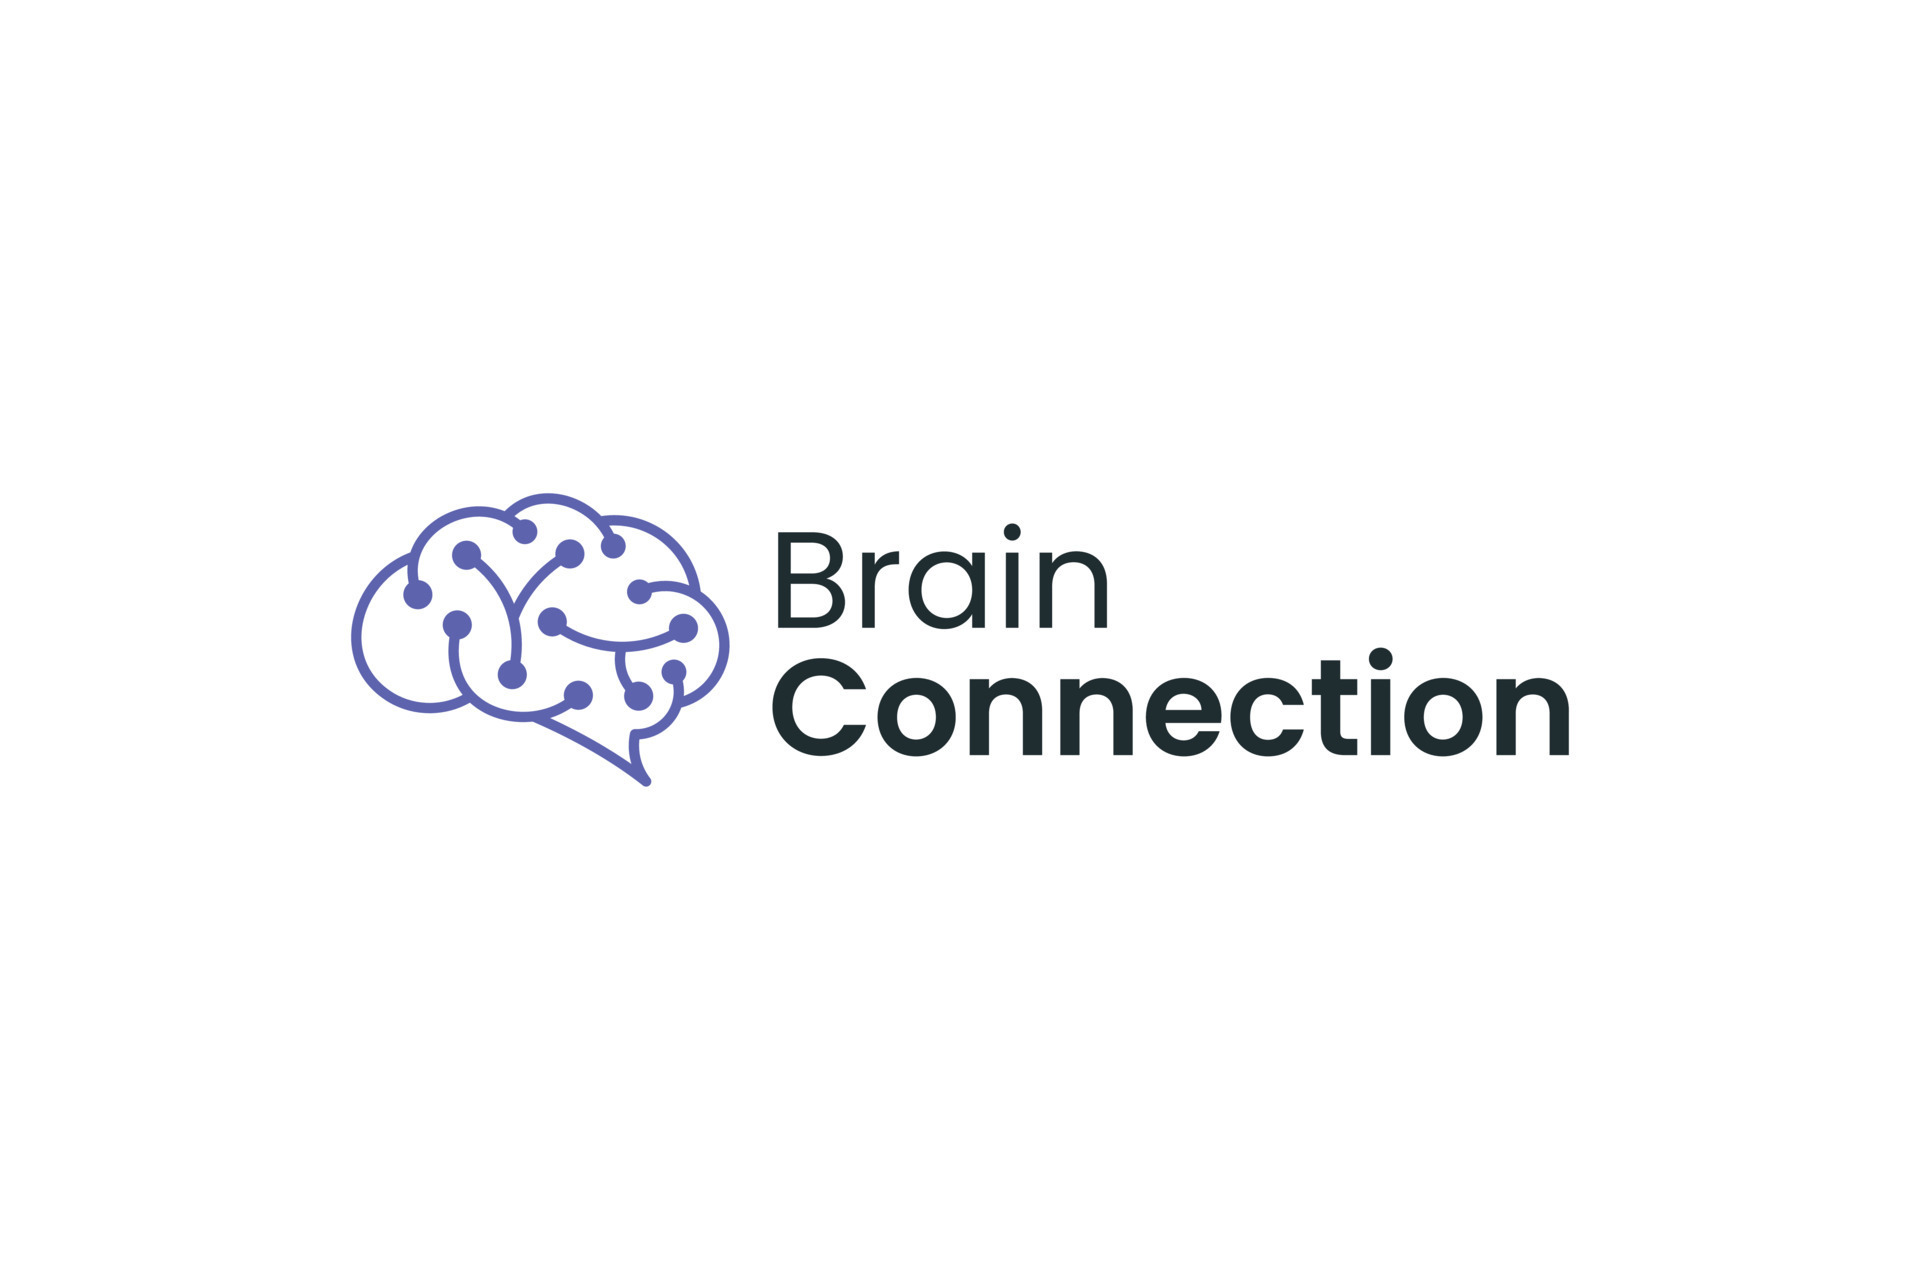 Brain connection smart idea logo vector design 12761701 Vector Art at ...